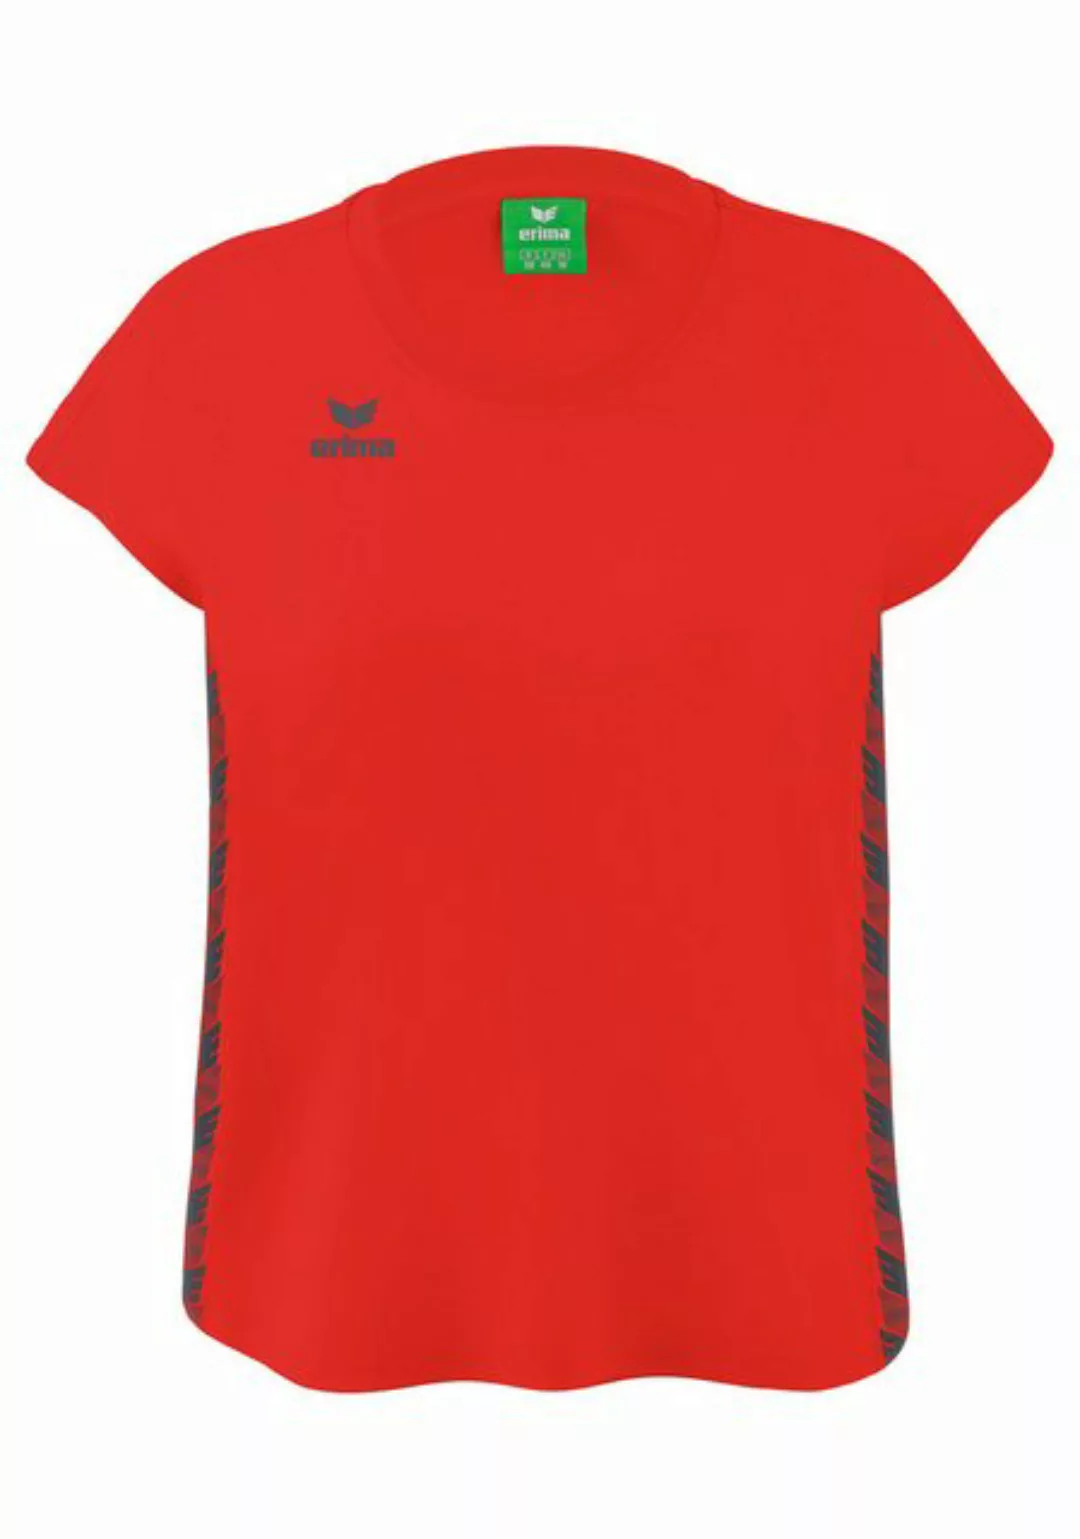 Erima T-Shirt Team Essential T-Shirt Damen default günstig online kaufen